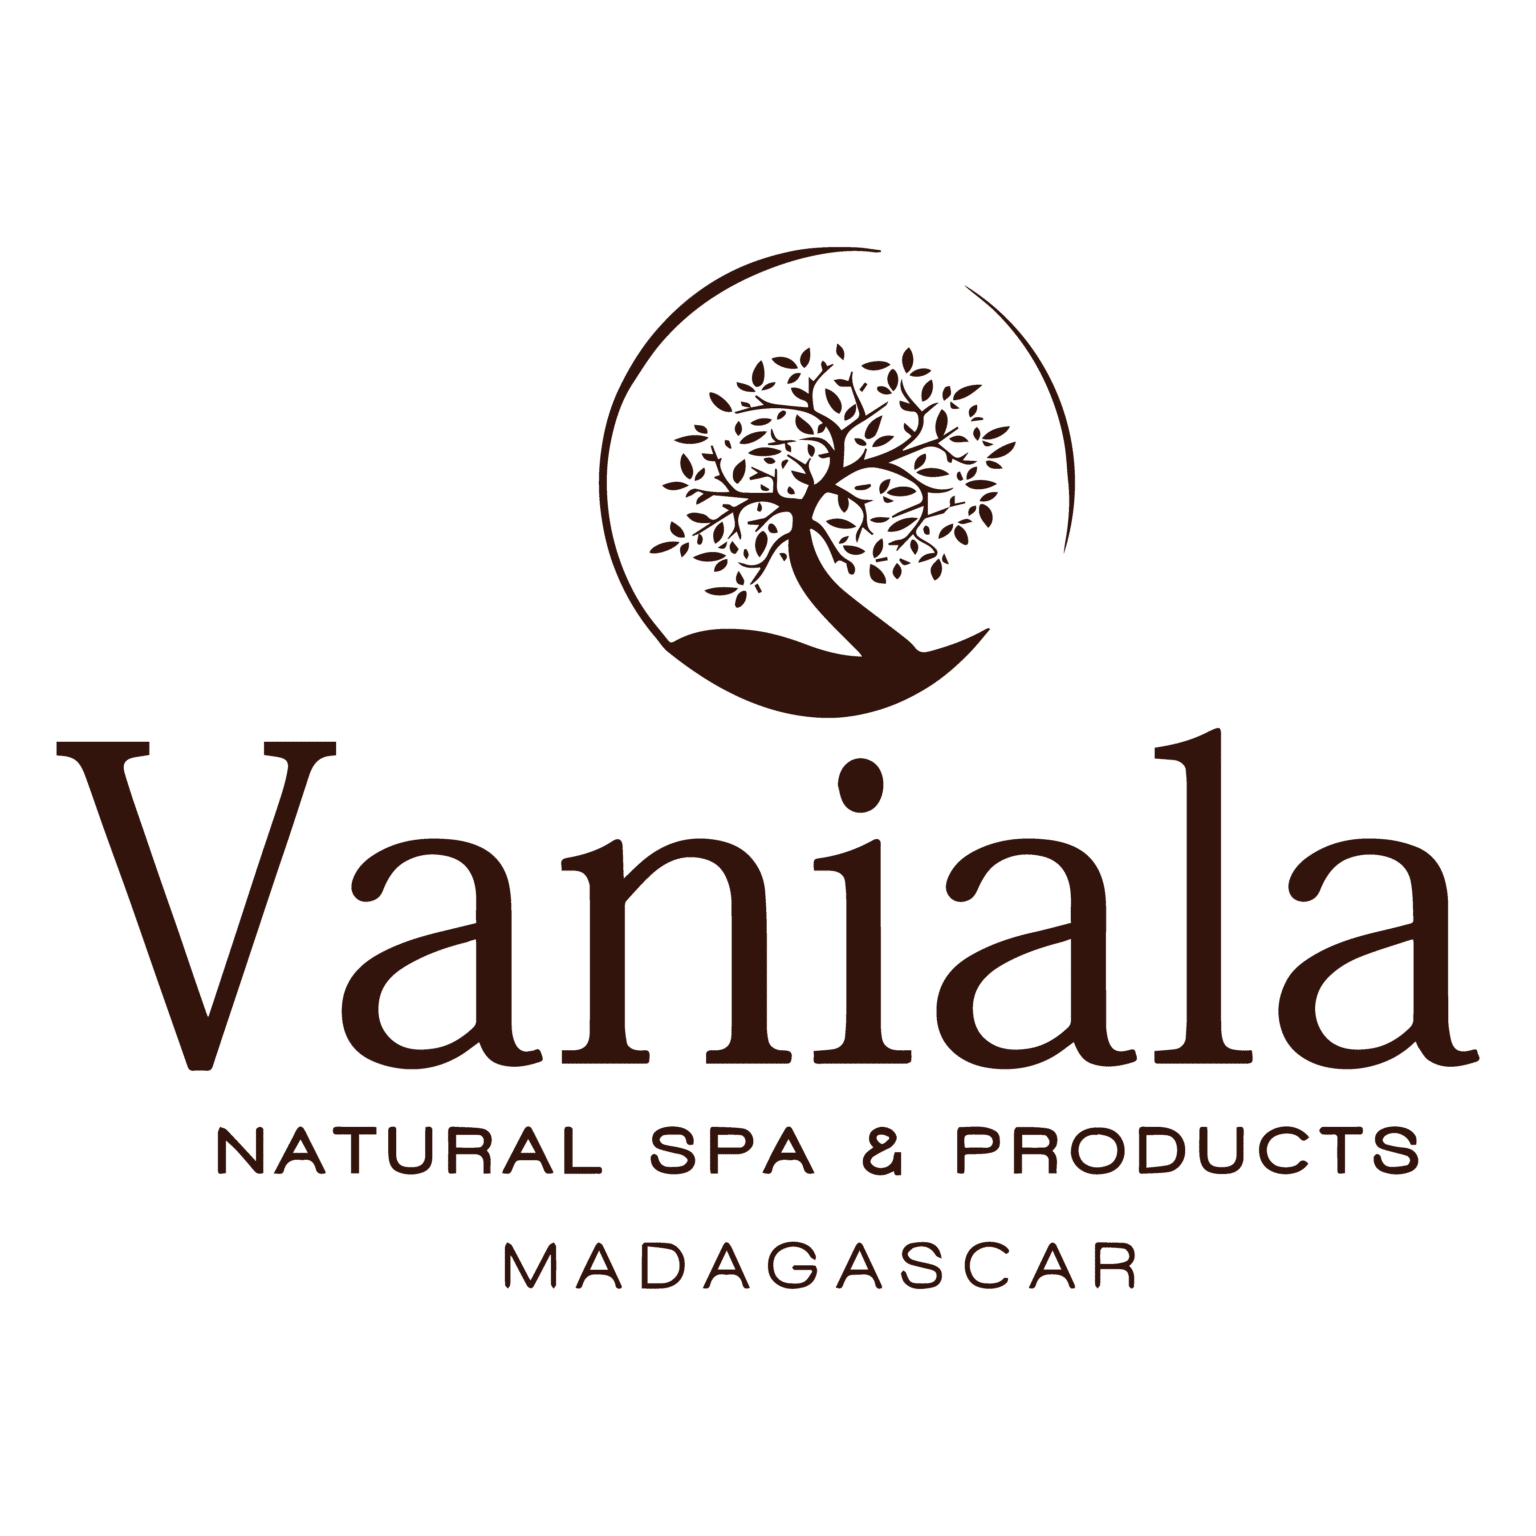 Vaniala Natural SPA & PRODUCTS